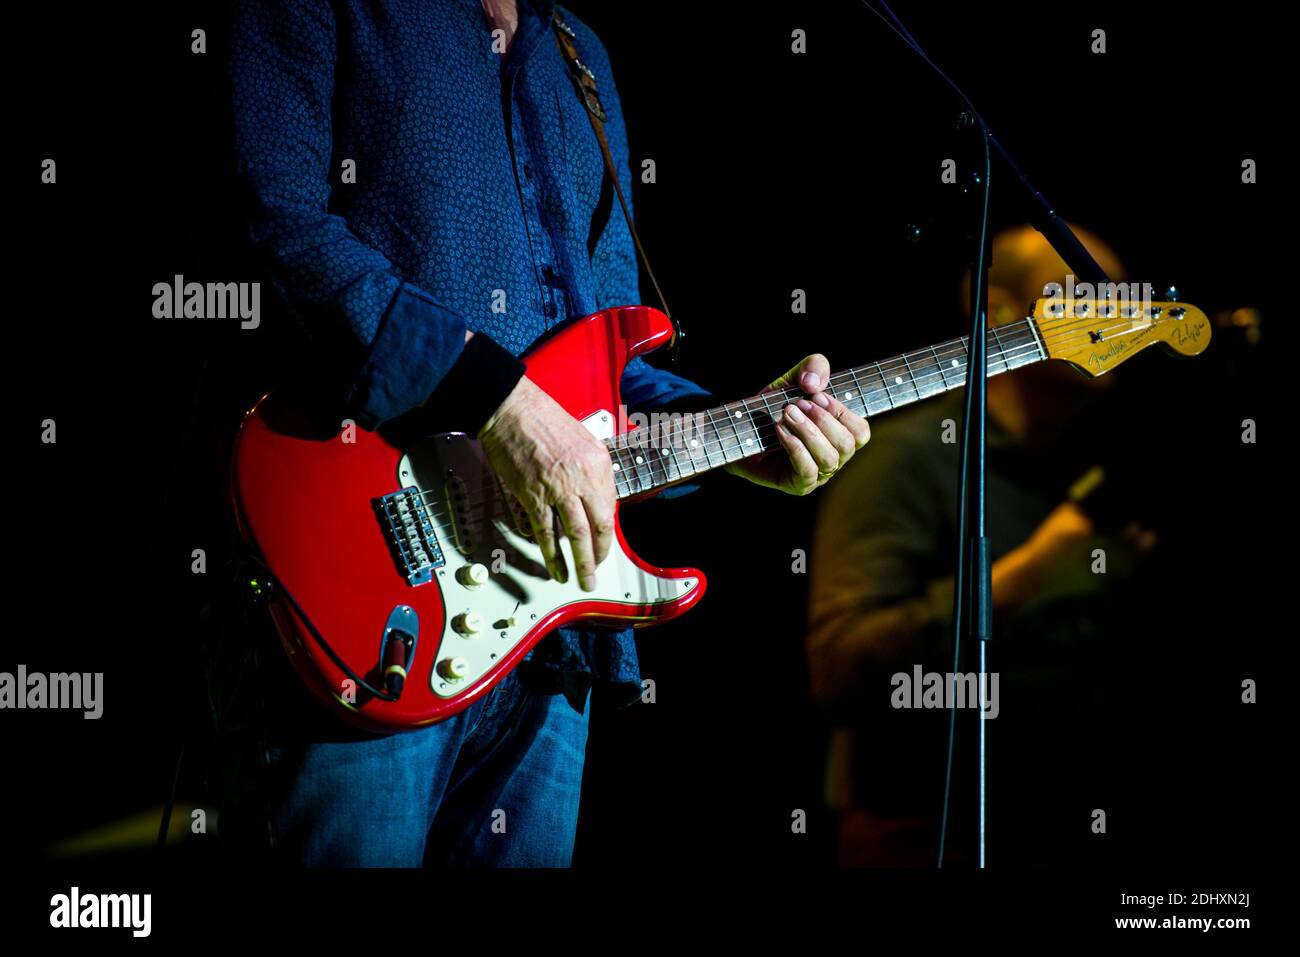 Il cantante, cantautore e musicista britannico Mark Knopfler ha suonato dal vivo al festival di musica italiana "Collisioni 2015". Mark Knopfler è anche conosciuto come il cantante della rock band Dire Straits. Foto Stock